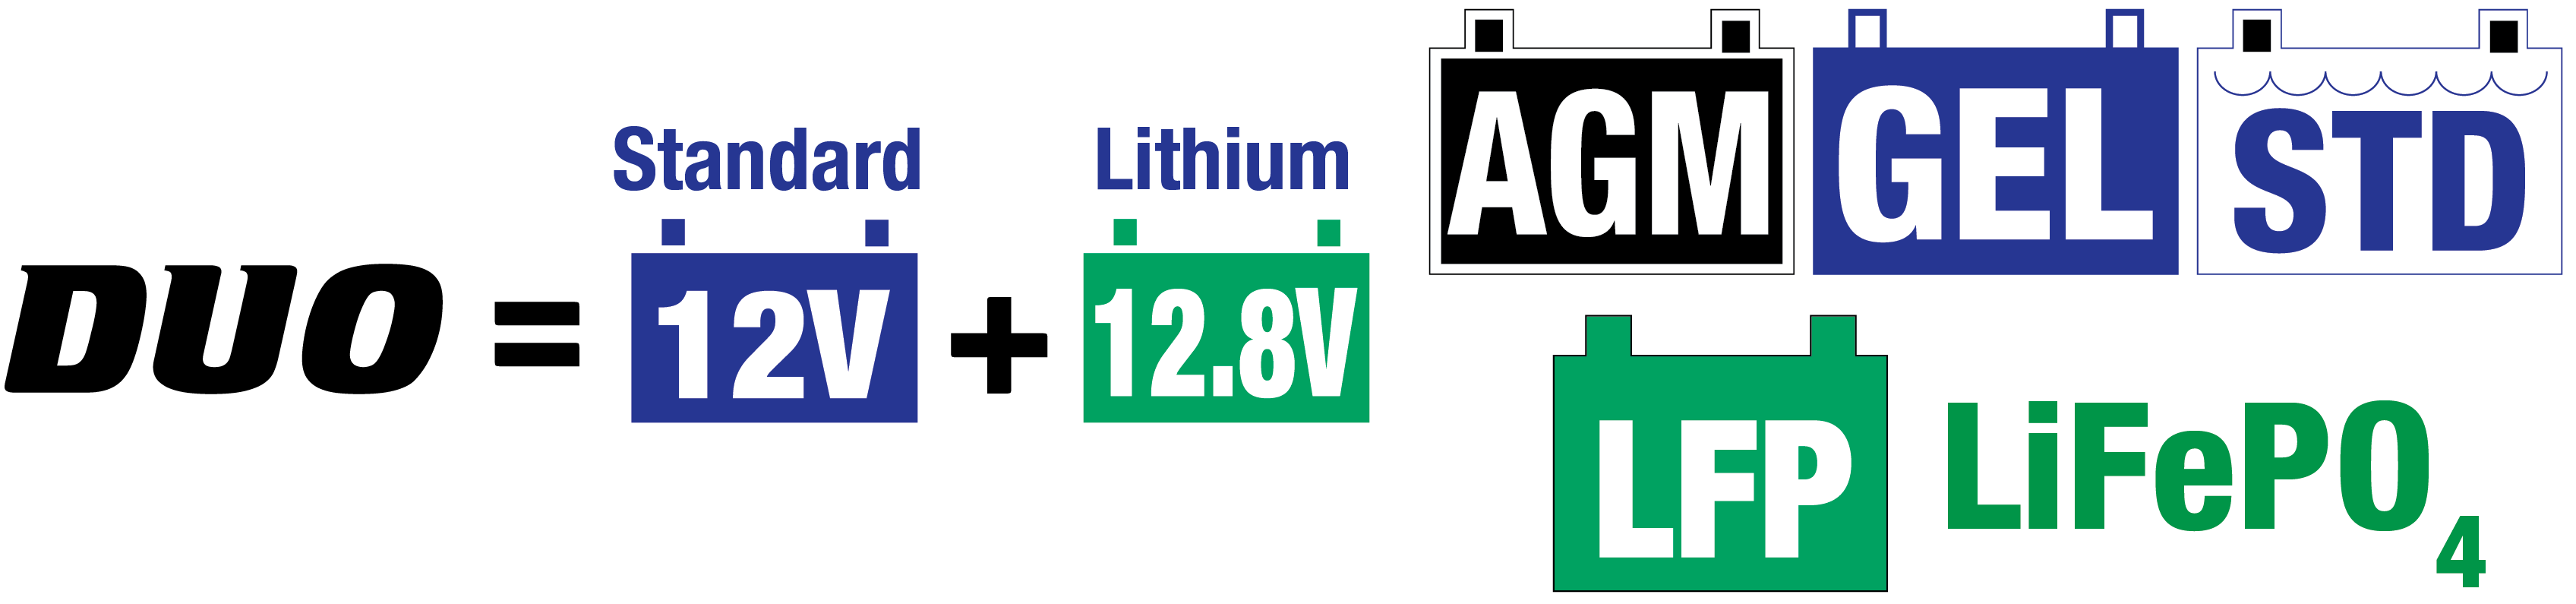 el cargador de baterías solar es ideal para baterías de plomo de 12V / 12,8V de litio